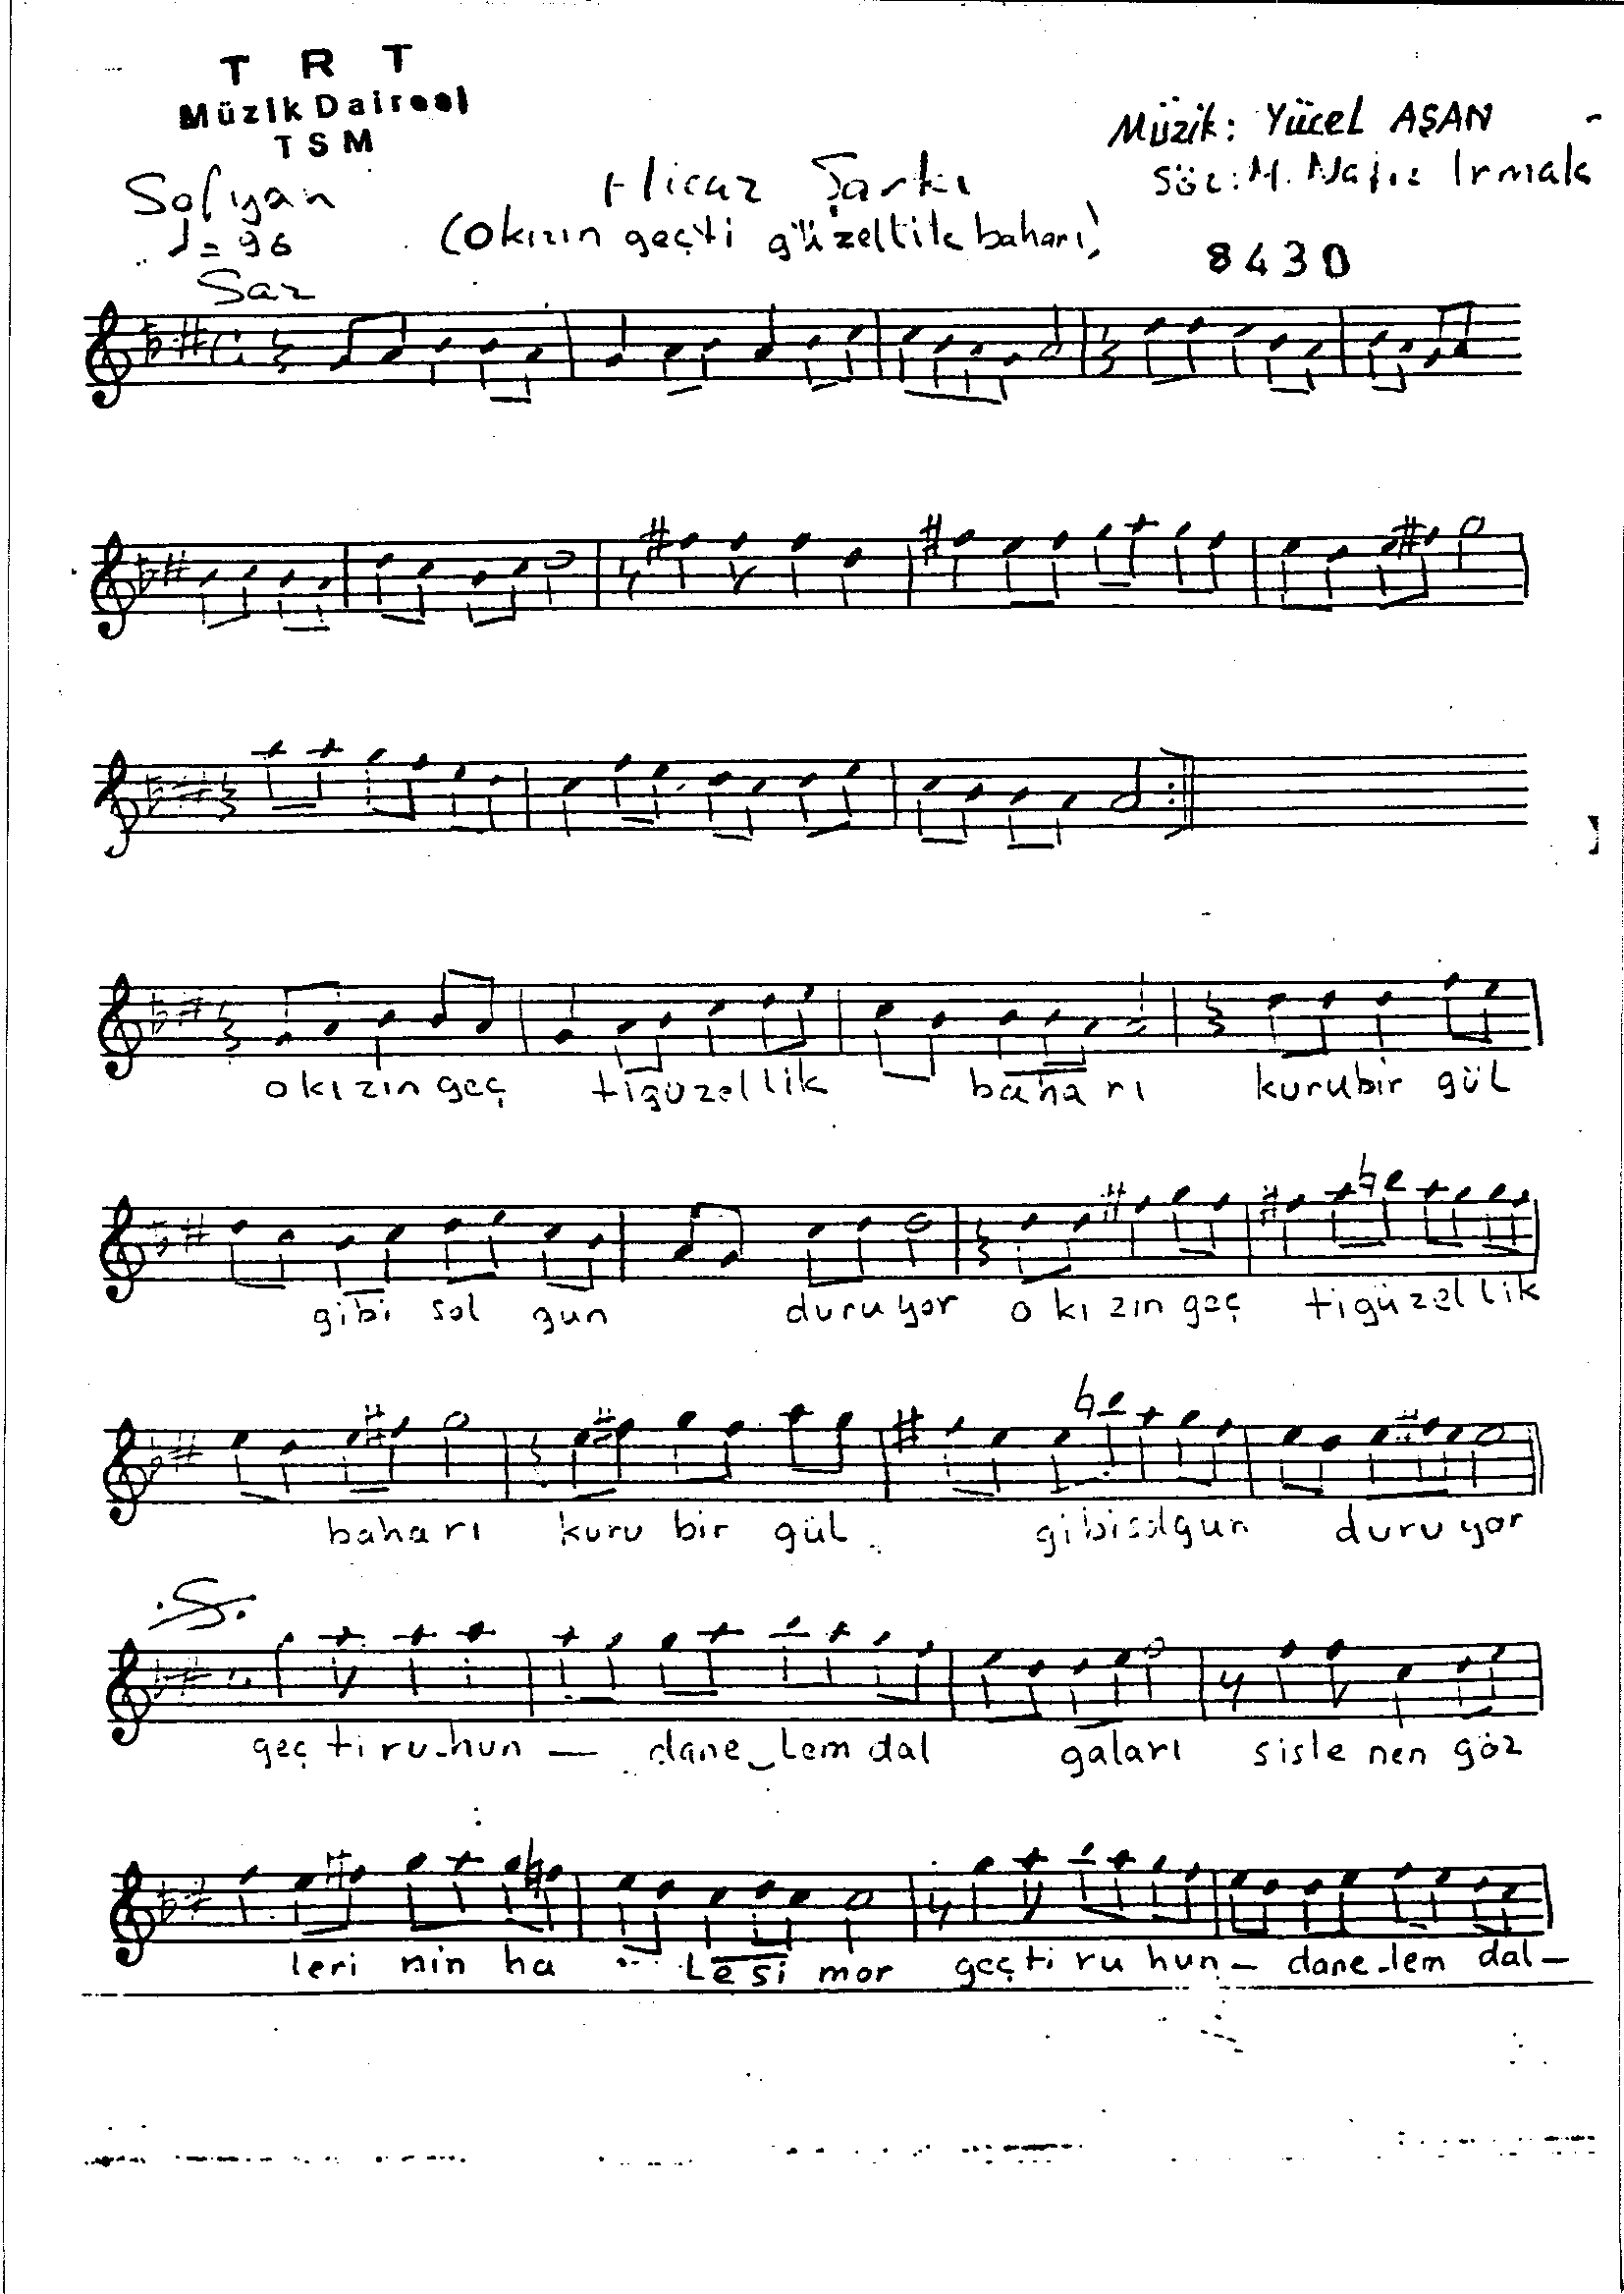 Hicâz - Şarkı - Yücel Aşan - Sayfa 1